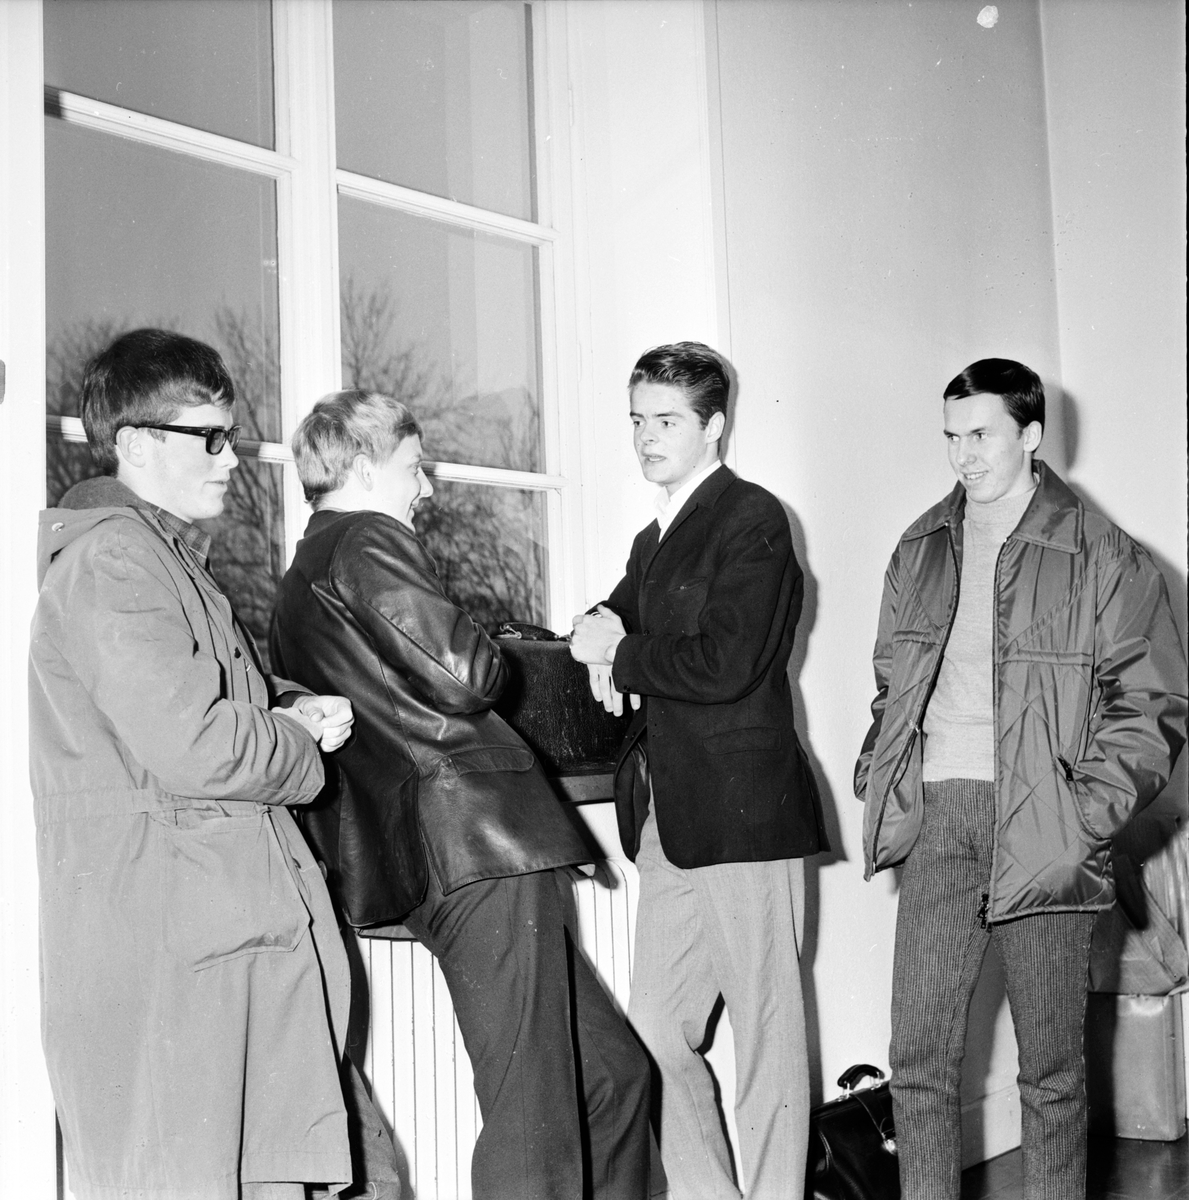 Bollnäs,
Skolorna börjar efter konflikten,
9 November 1966